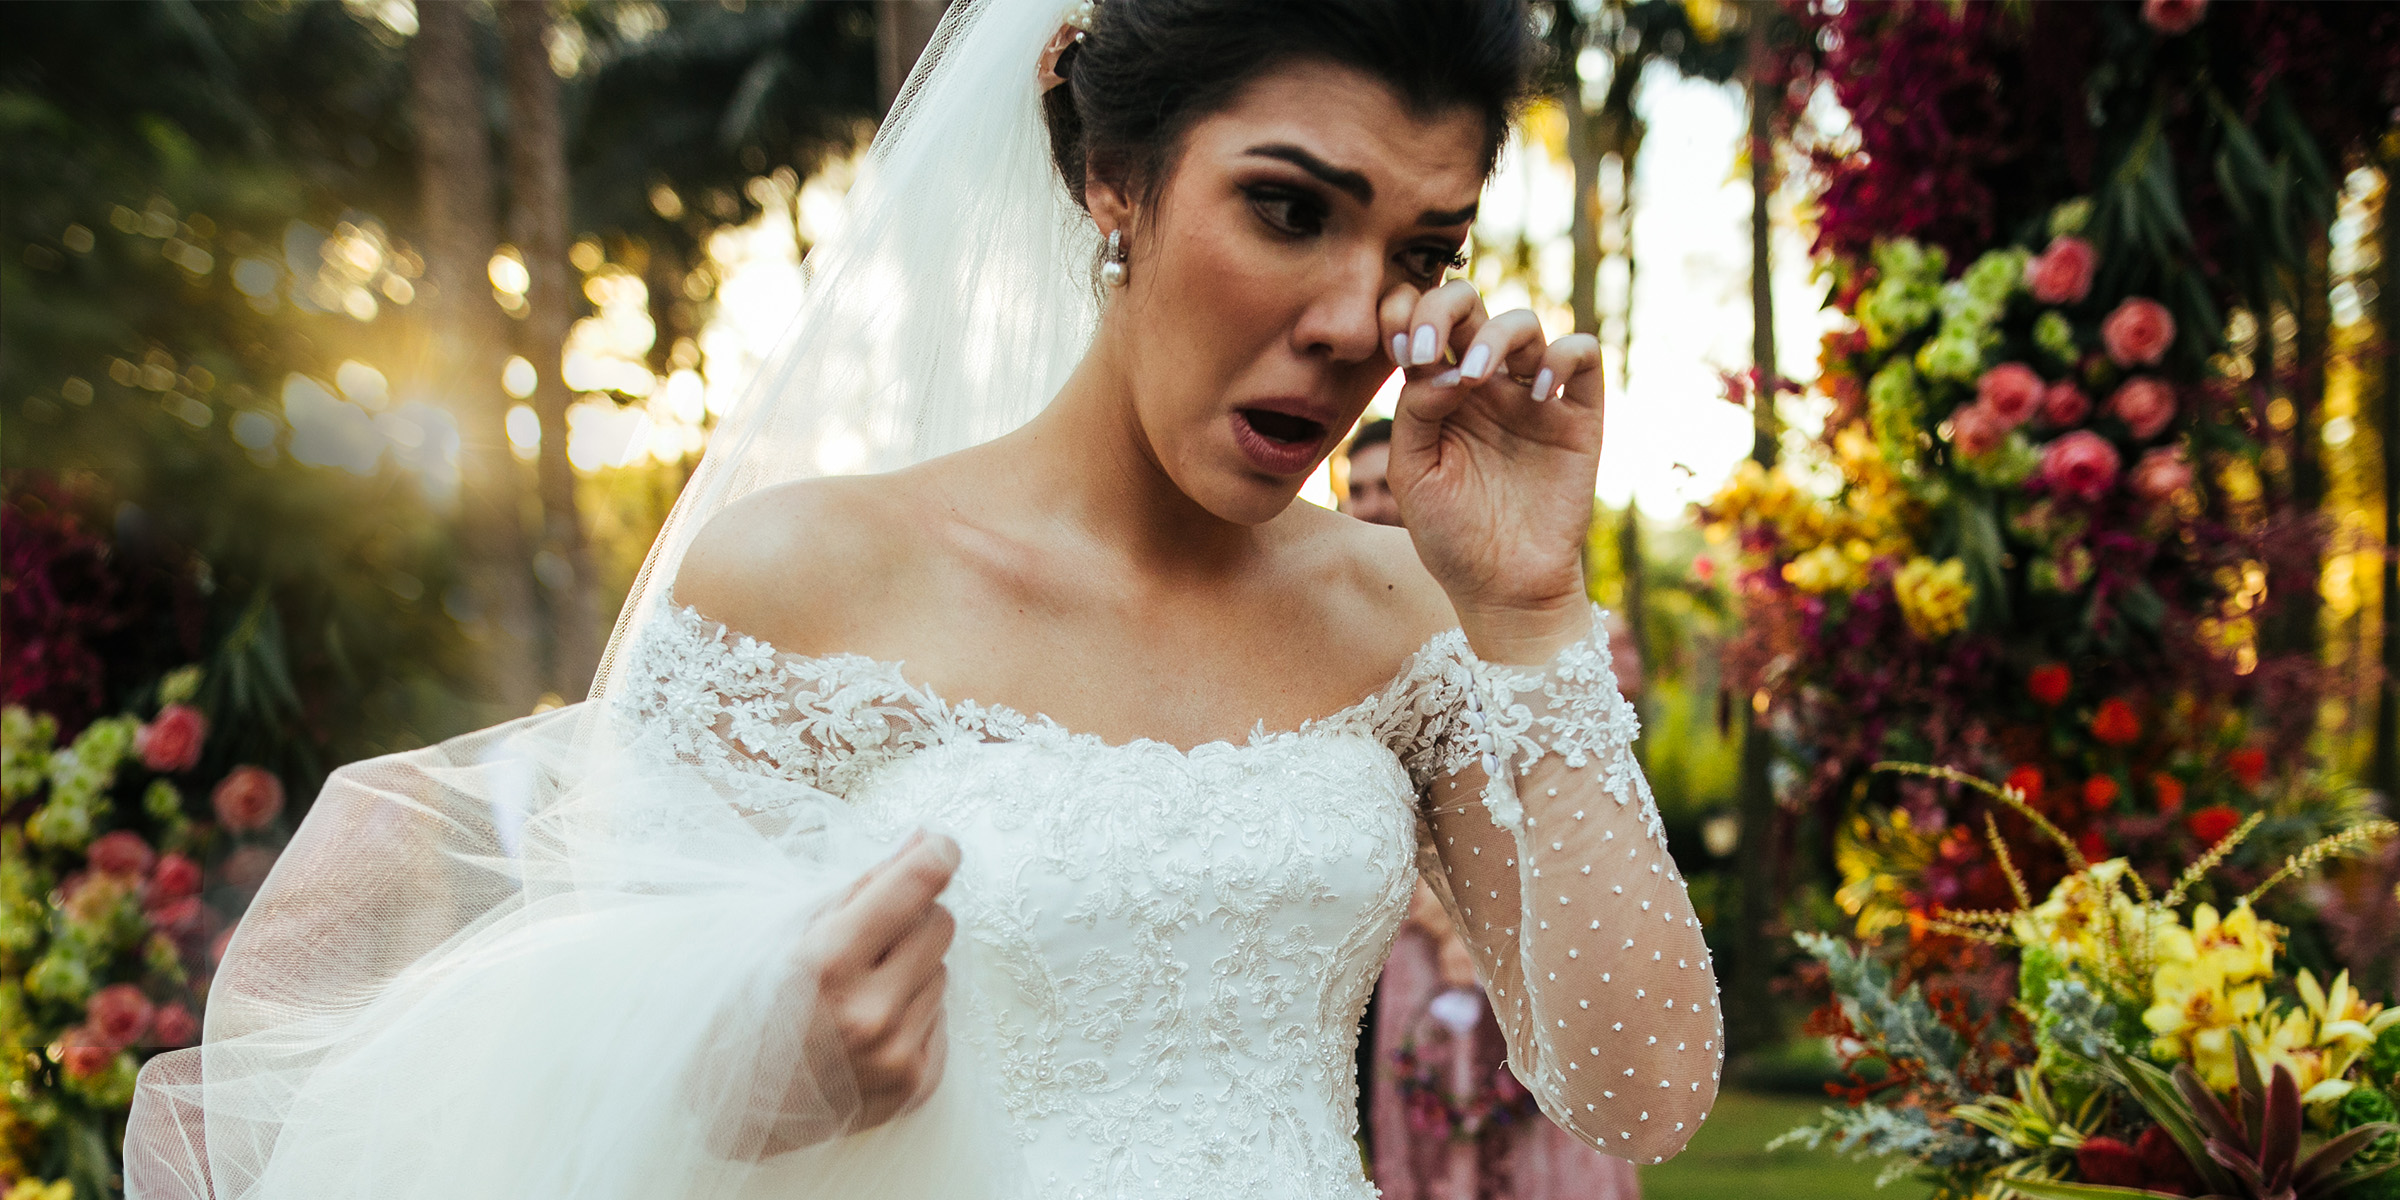 Una novia llorando | Fuente: Getty Images